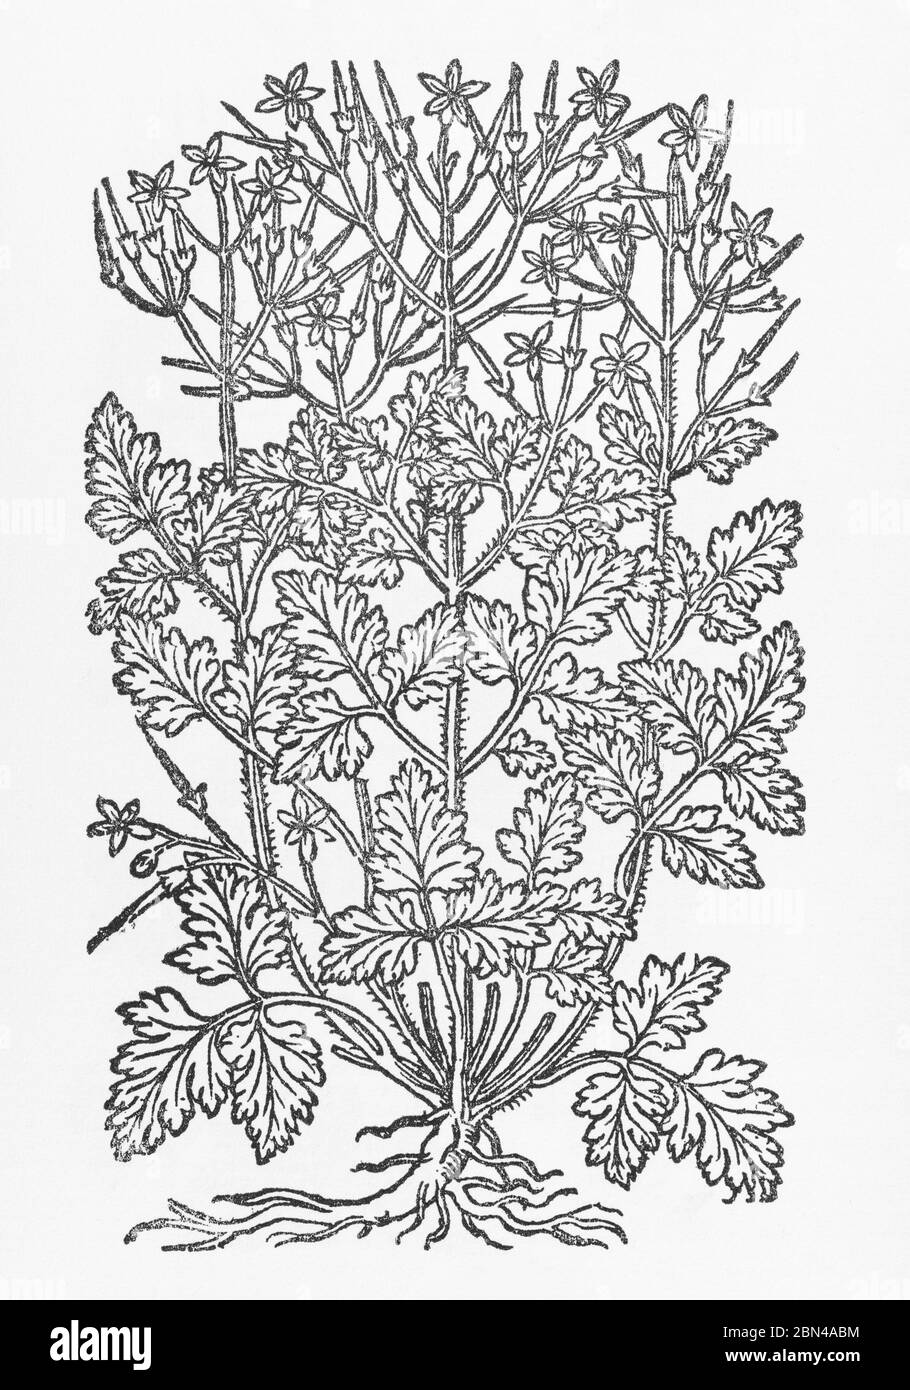 Erba Robert / Geranium robertianum pianta taglio legno da Gerarde's Herball, Storia delle piante. È una pianta medicinale ben nota per i rimedi. P794. Foto Stock